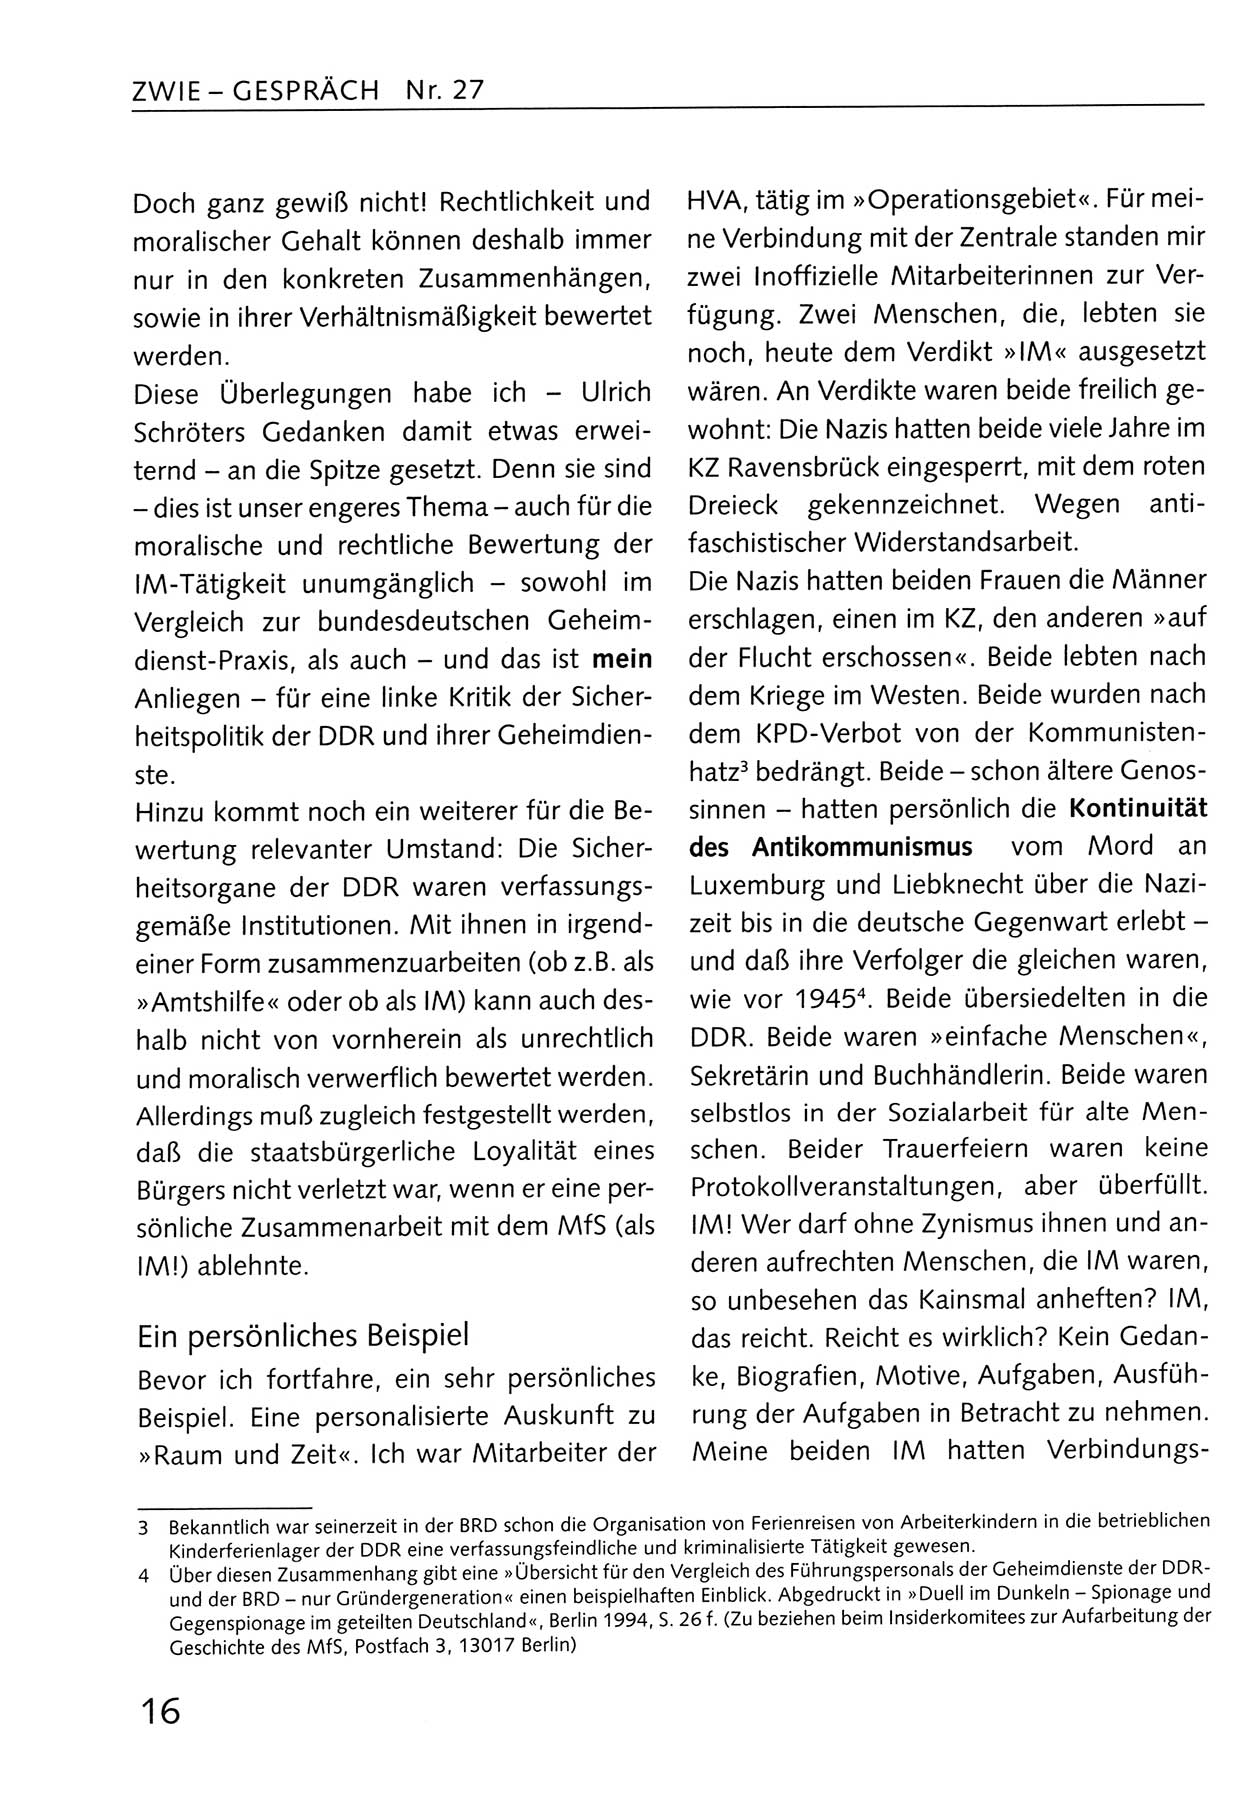 Zwie-Gespräch, Beiträge zum Umgang mit der Staatssicherheits-Vergangenheit [Deutsche Demokratische Republik (DDR)], Ausgabe Nr. 27, Berlin 1995, Seite 16 (Zwie-Gespr. Ausg. 27 1995, S. 16)